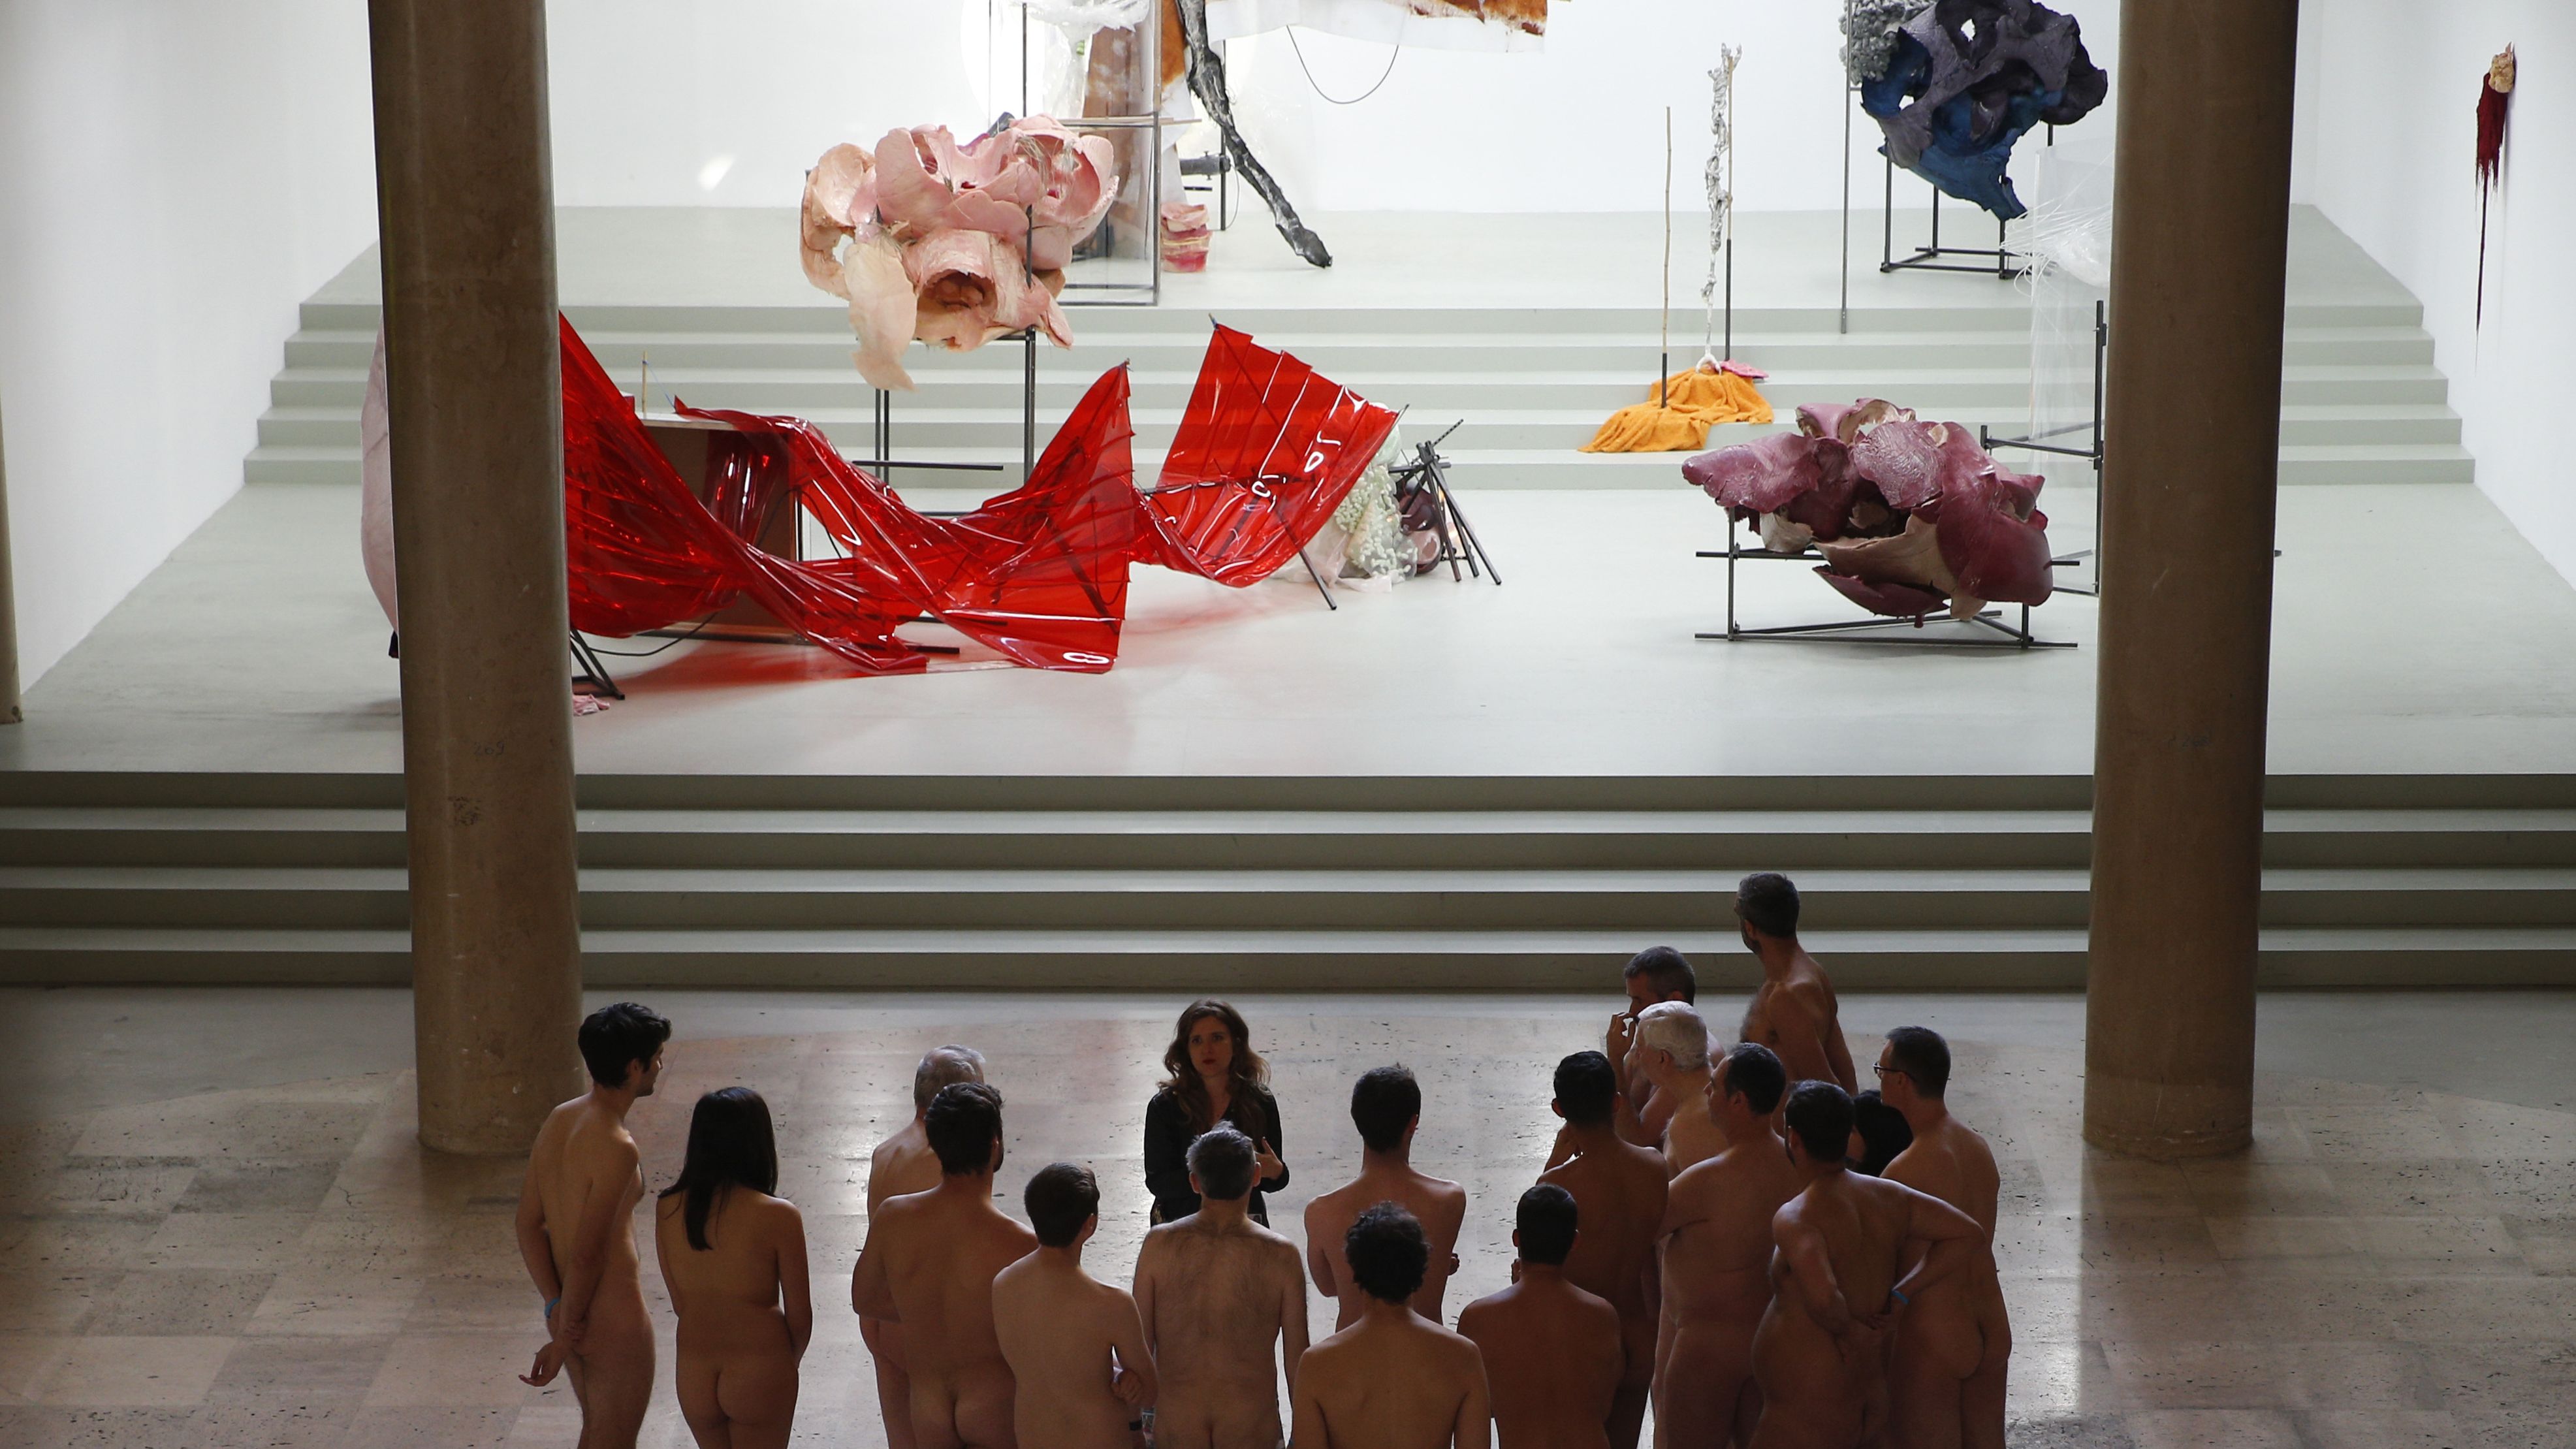 Paris museum opens its doors to nudists | CNN